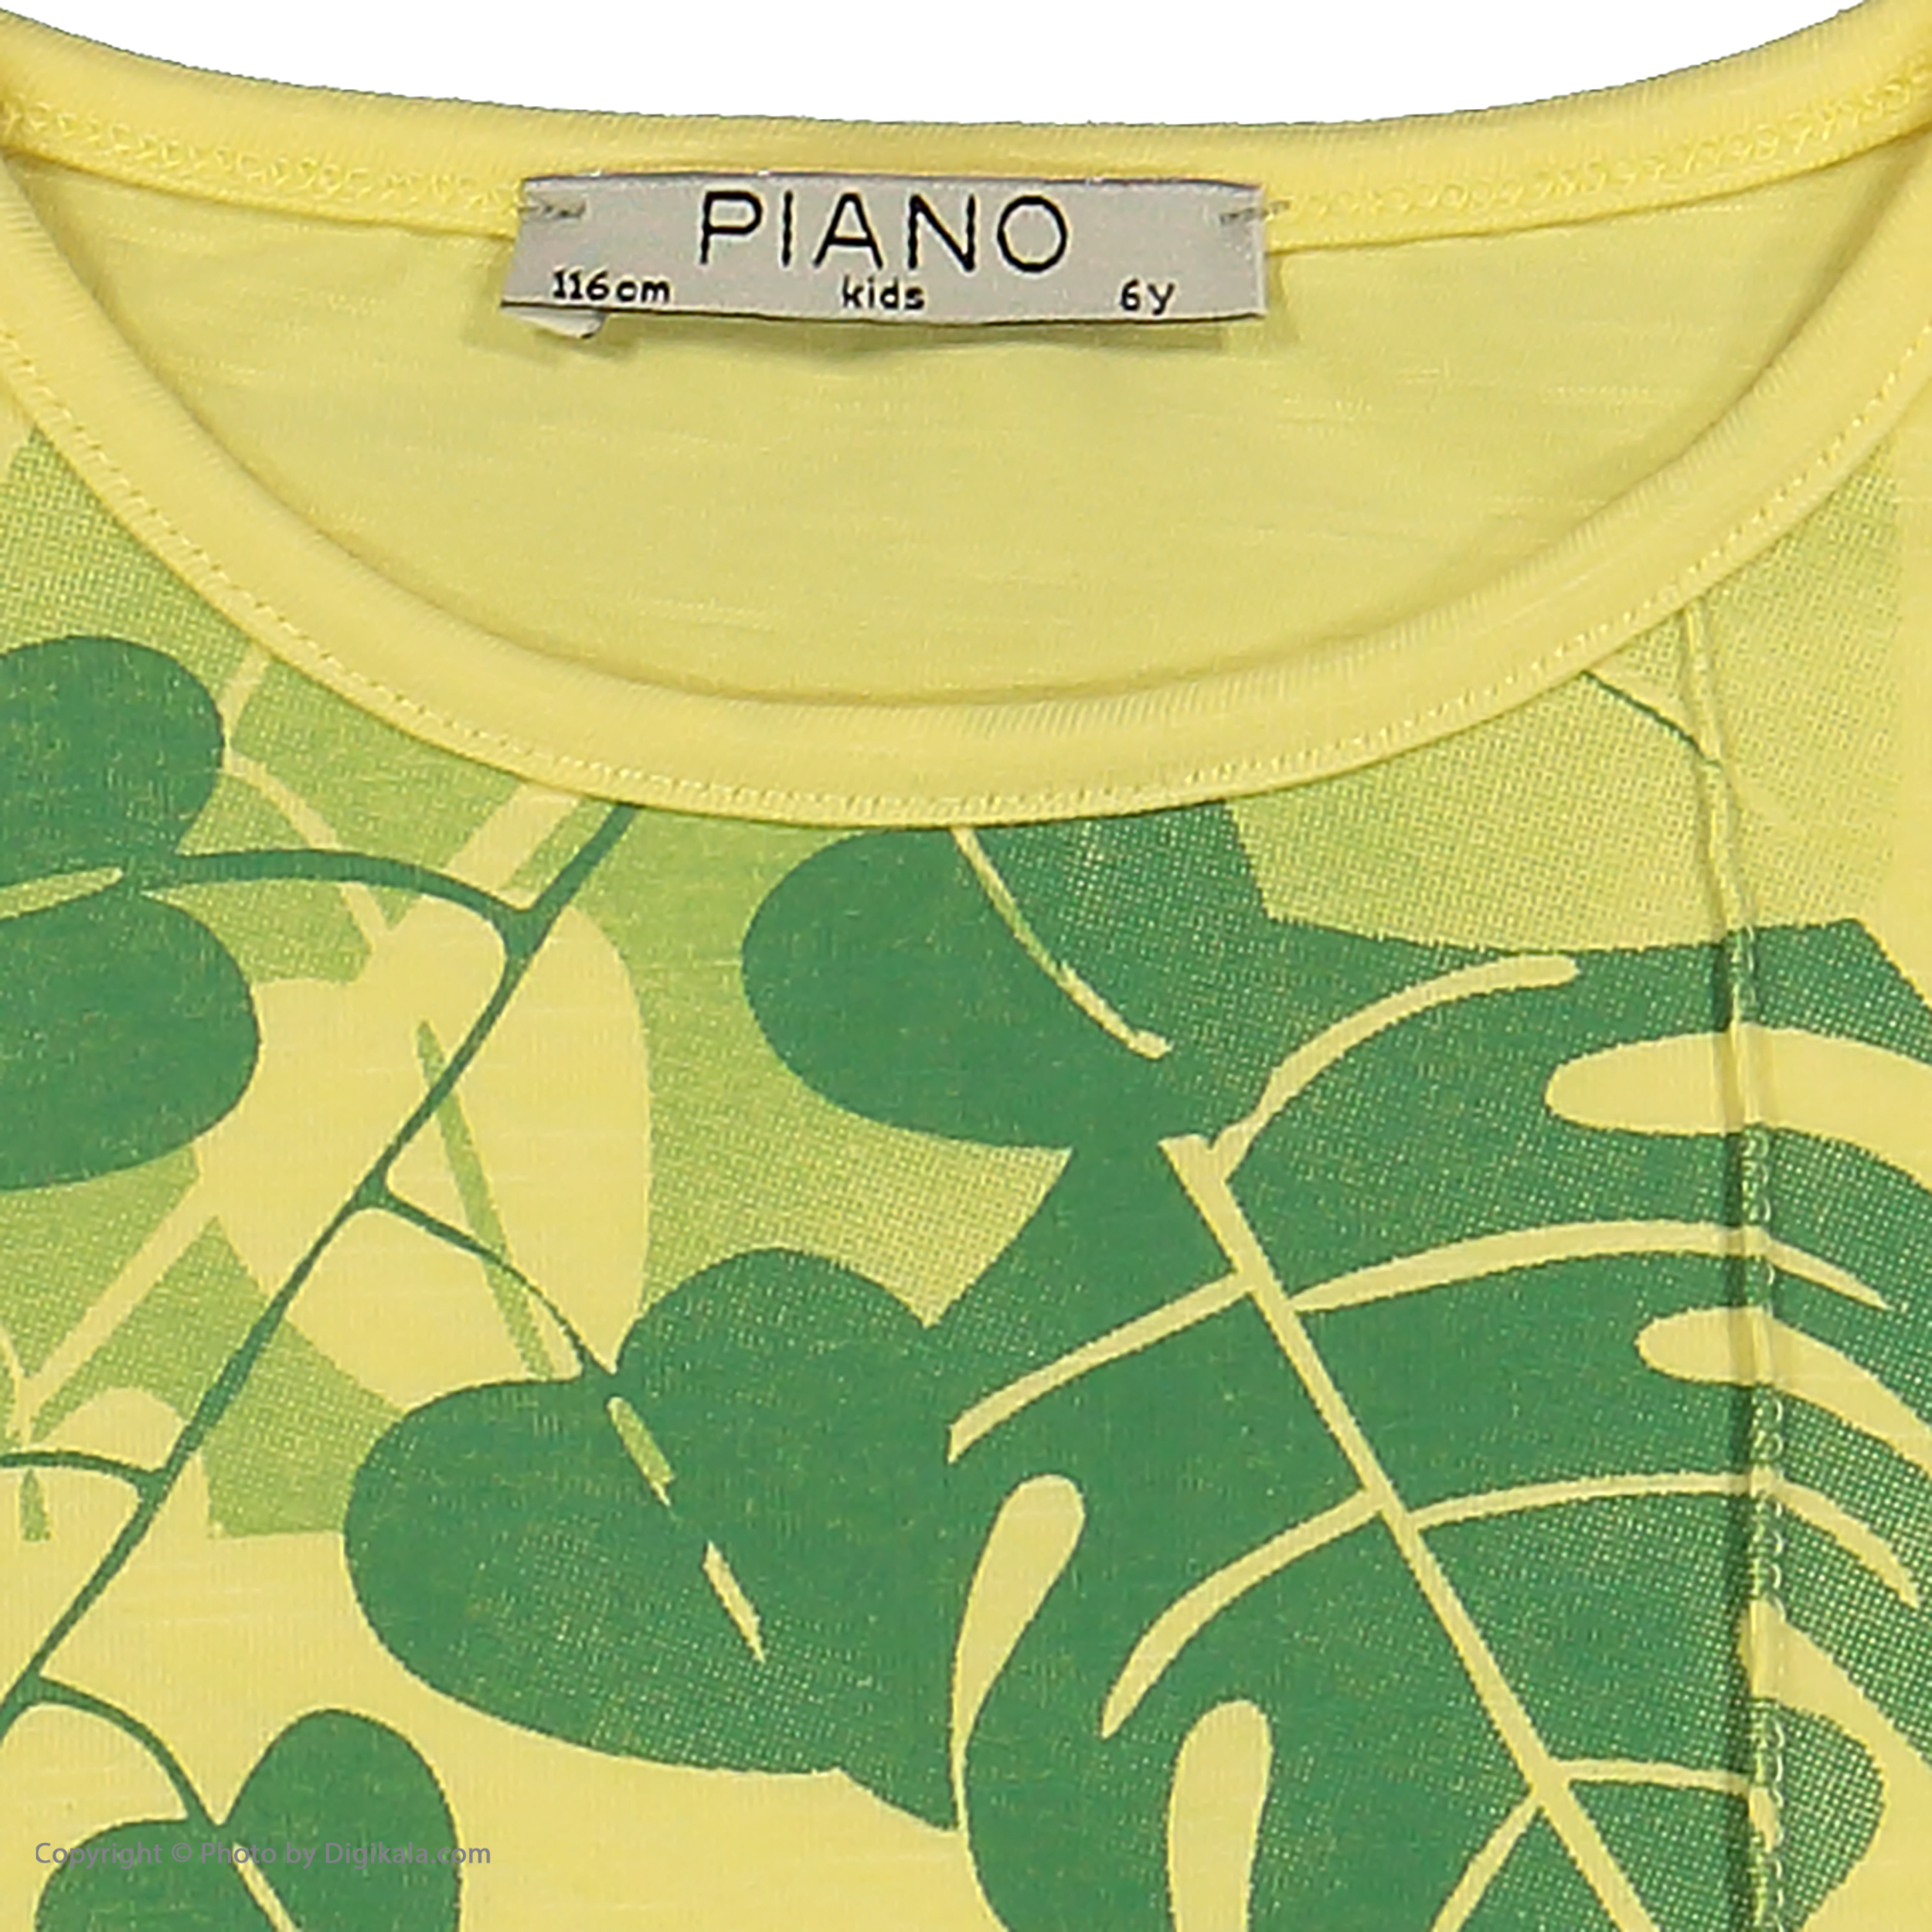 تی شرت دخترانه پیانو مدل 01403-16 -  - 5